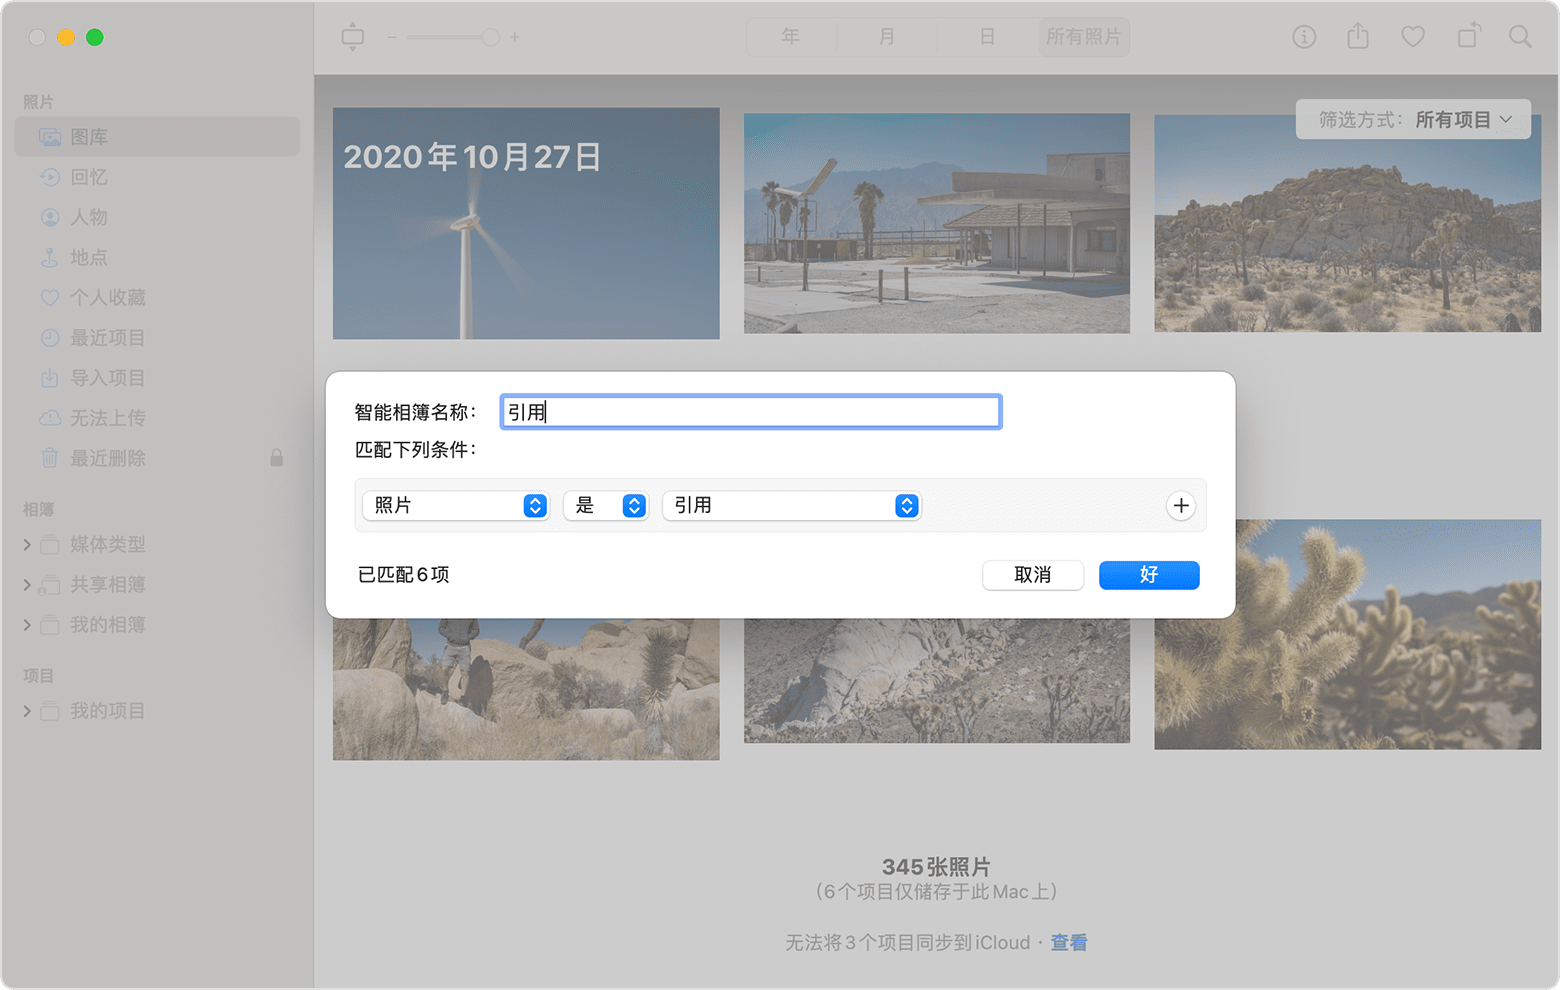 “新建智能相簿”对话框显示了智能相簿命名为“引用”，并将条件设置为“照片是引用”。